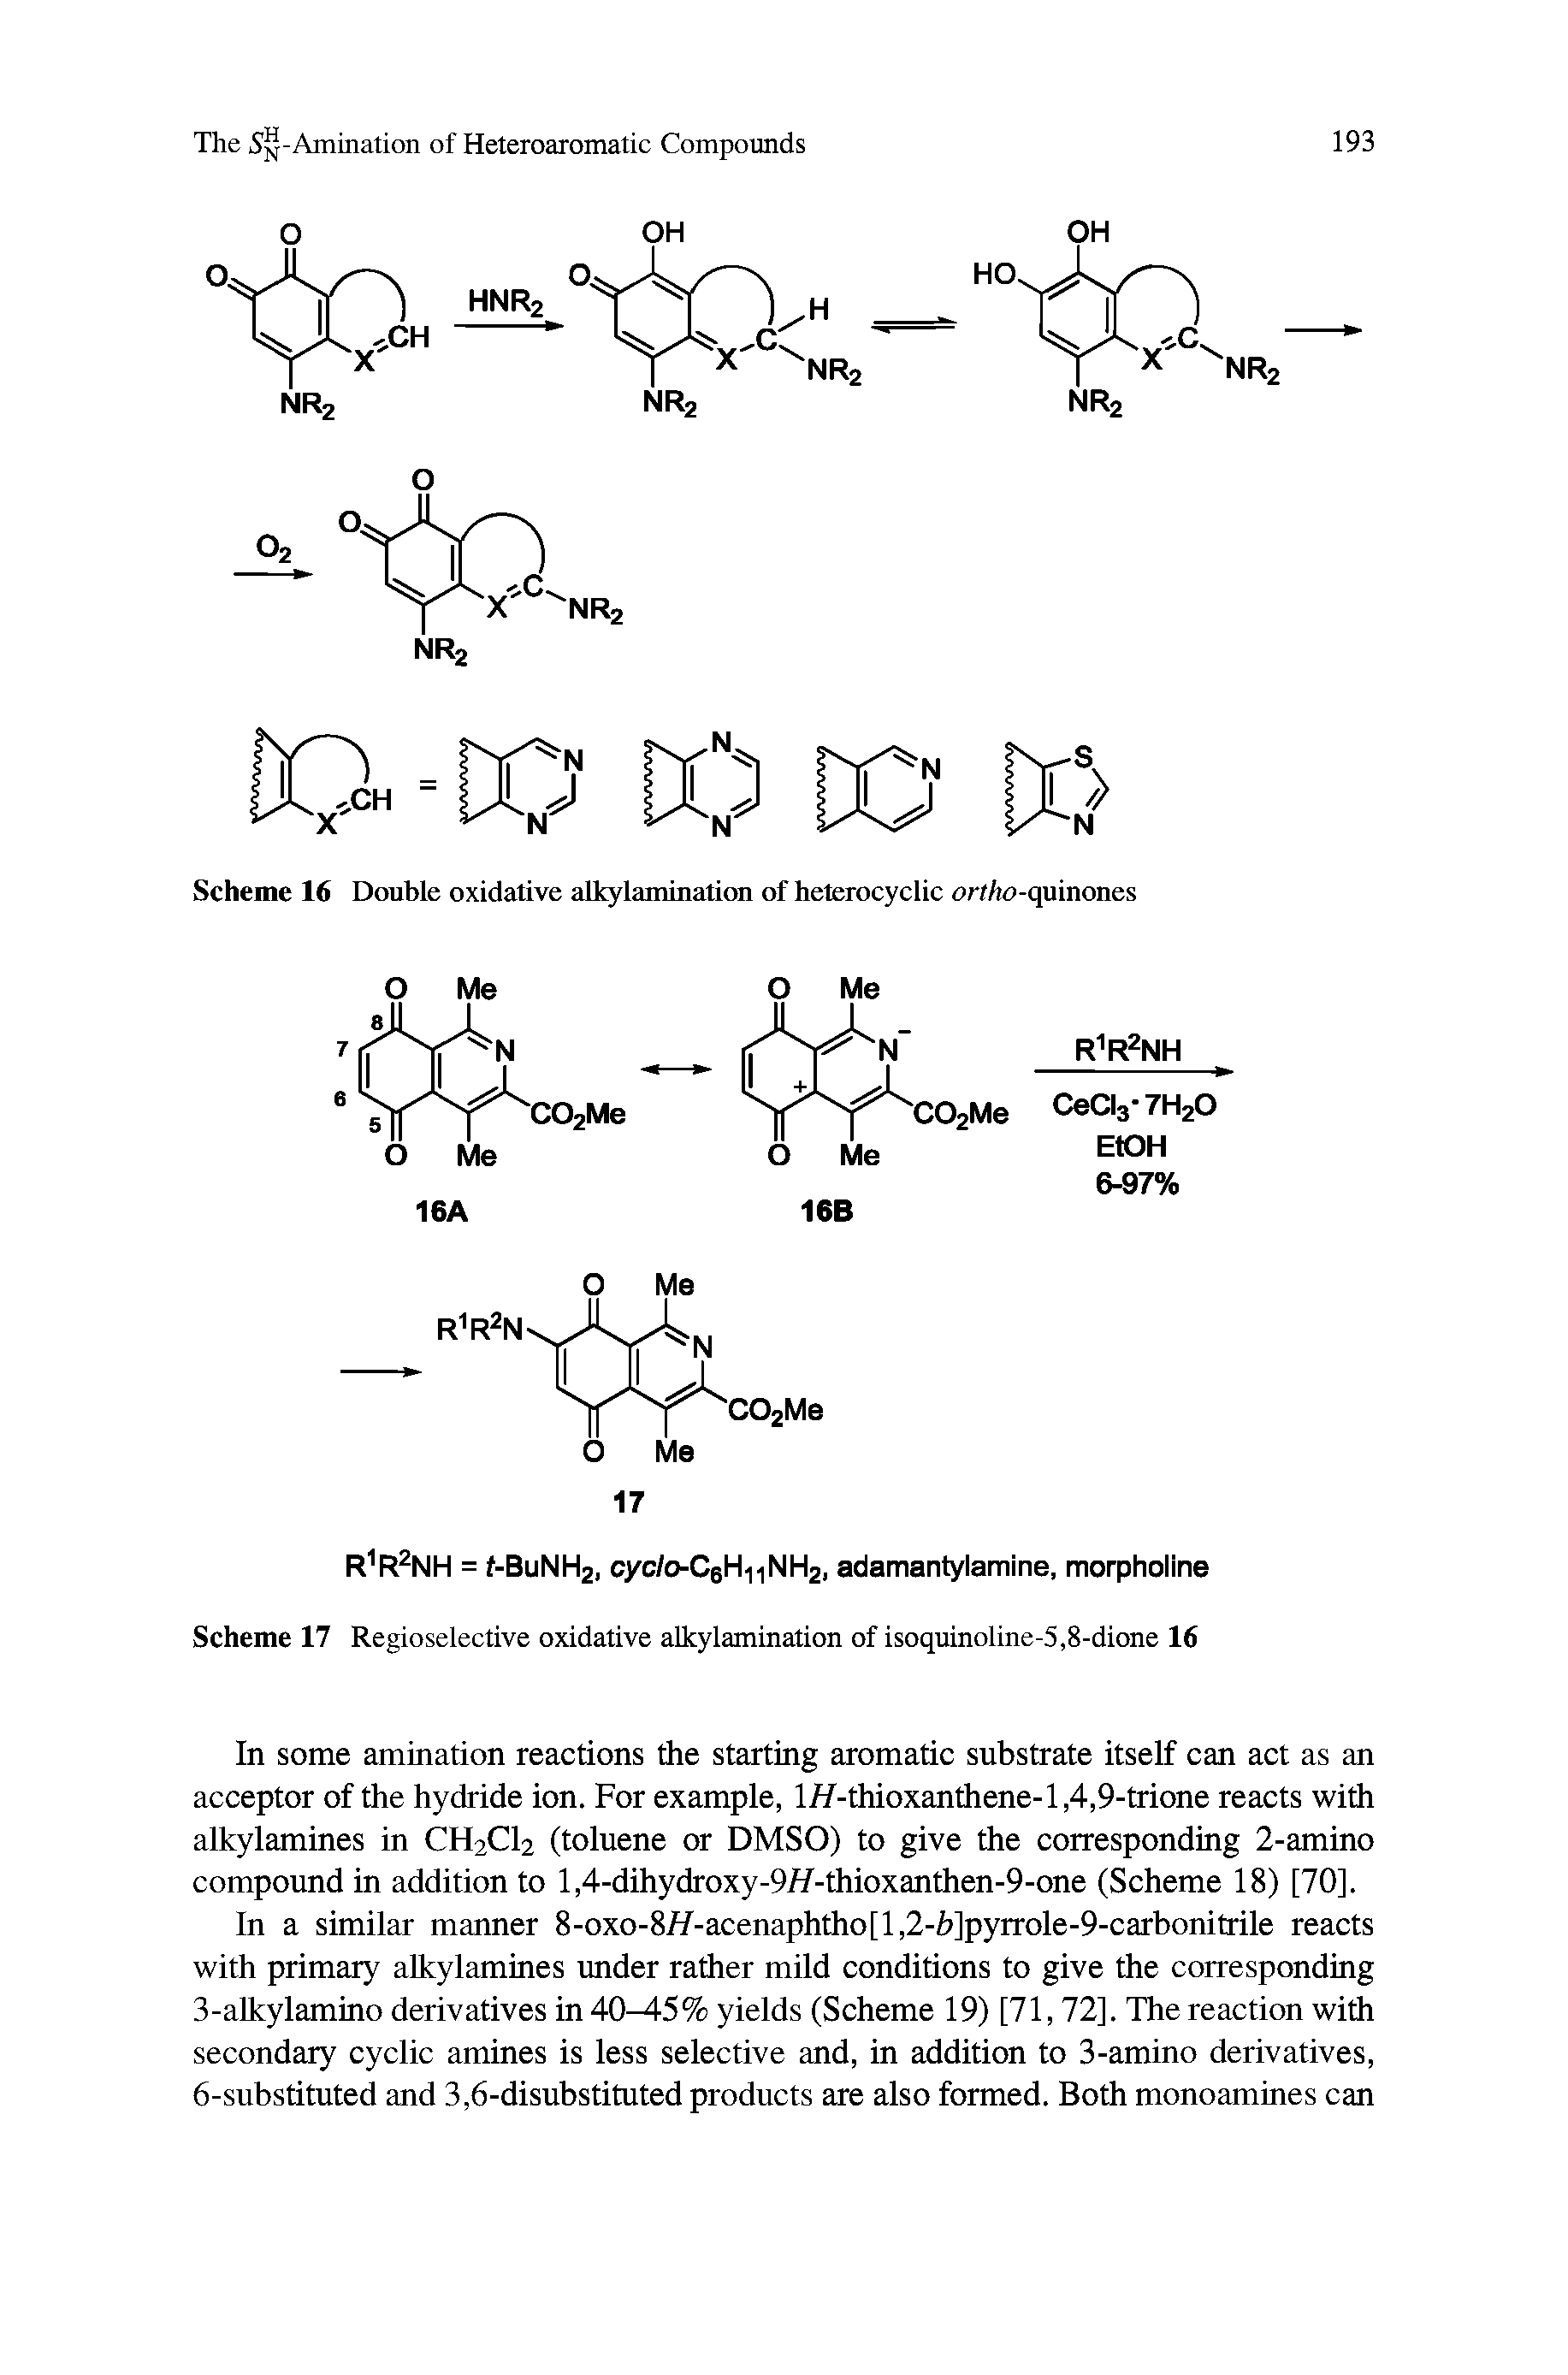 Scheme 17 Regioselective oxidative alkylamination of isoquinoline-5,8-dione 16...